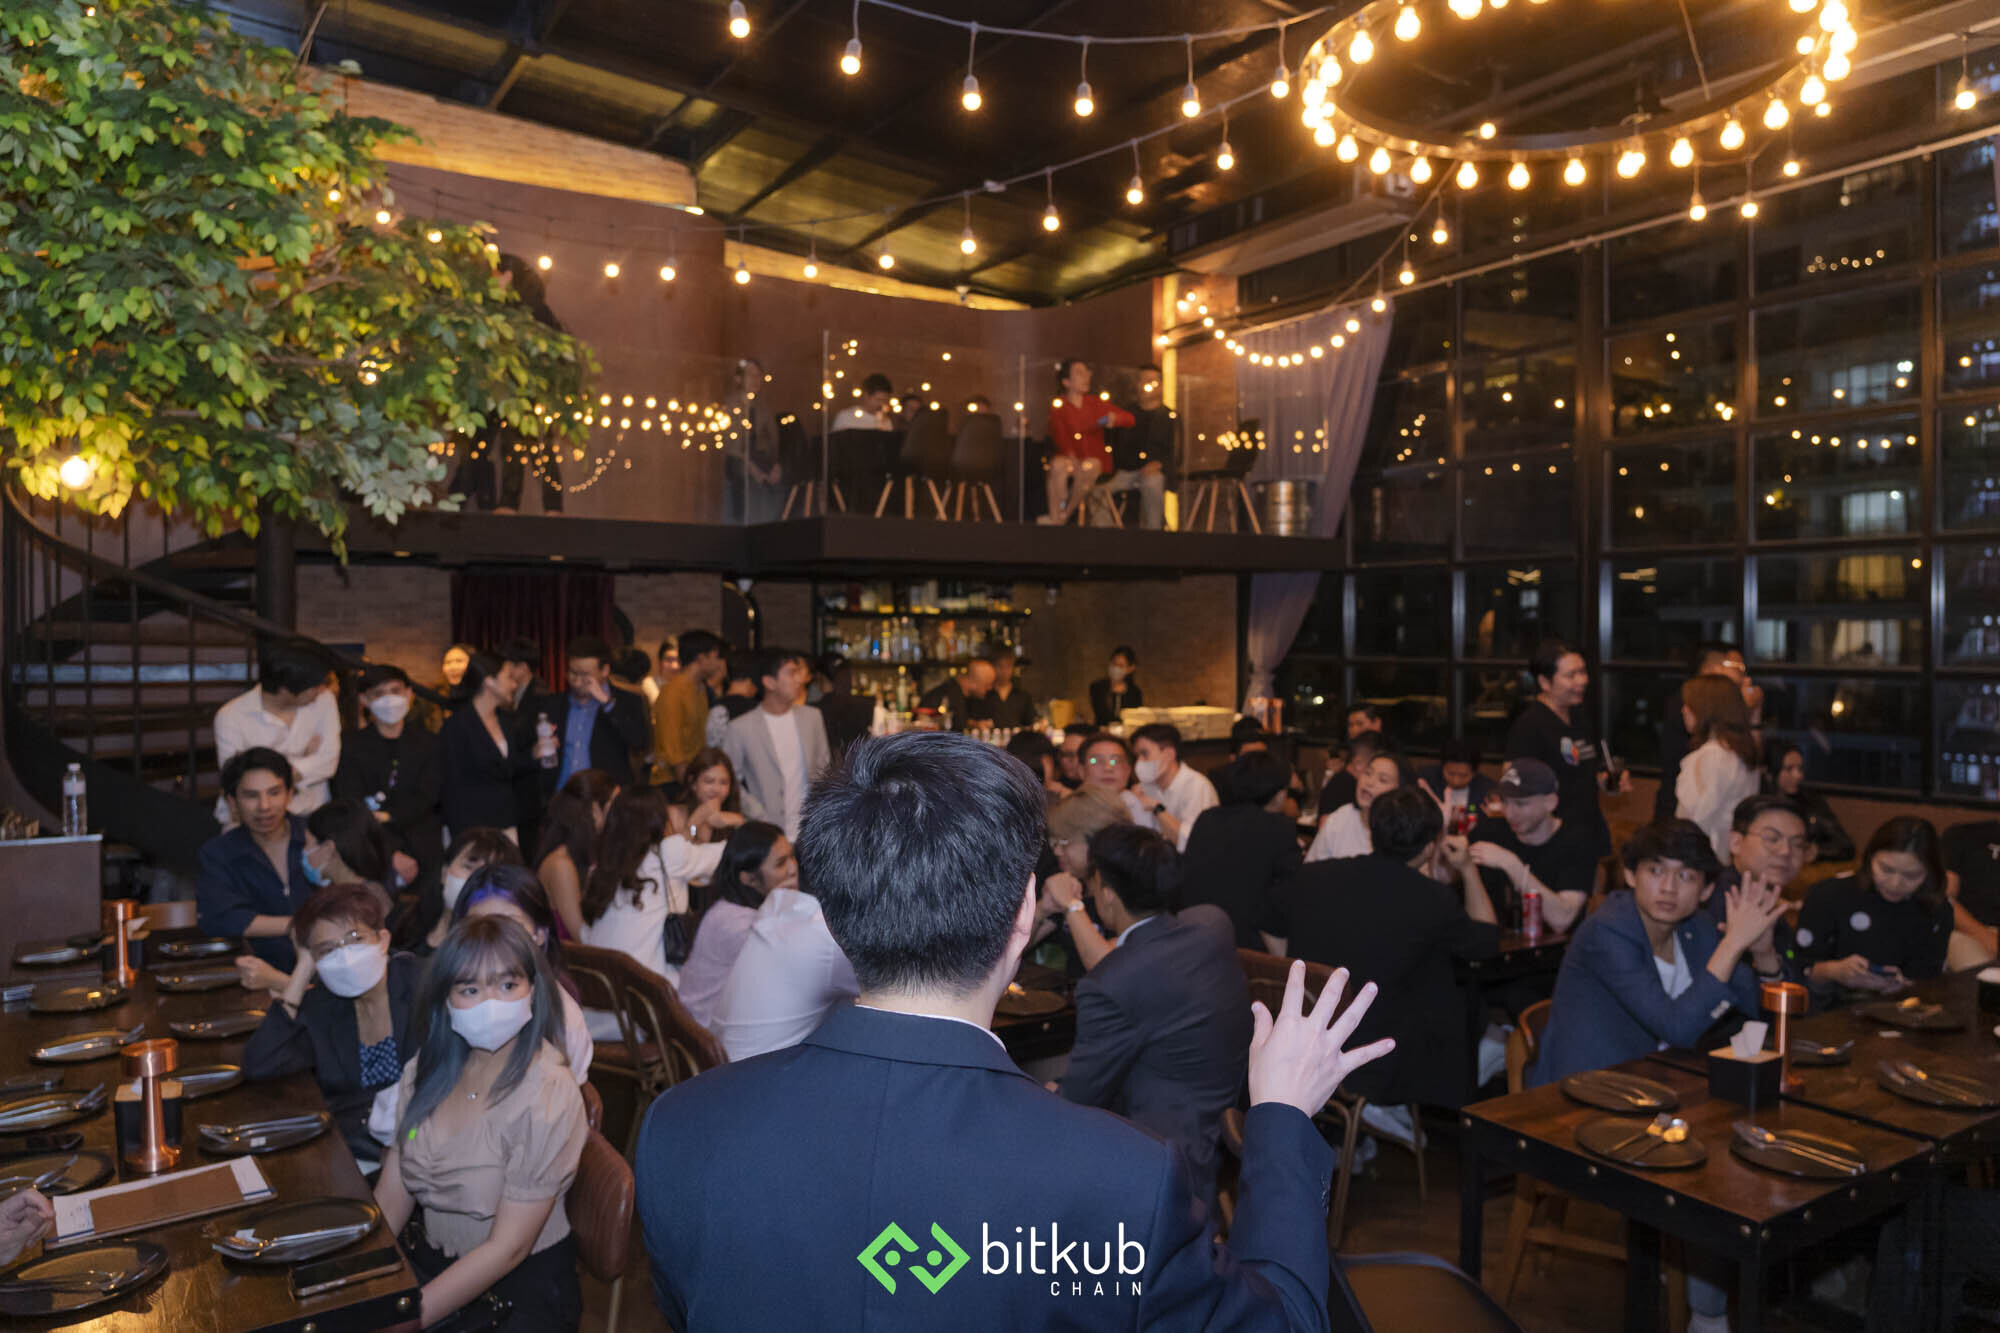 จบไปแล้วกับงาน BKC Biz Meetup เชื่อมต่อและสร้างโอกาสทางธุรกิจด้วยเทคโนโลยีบล็อกเชน